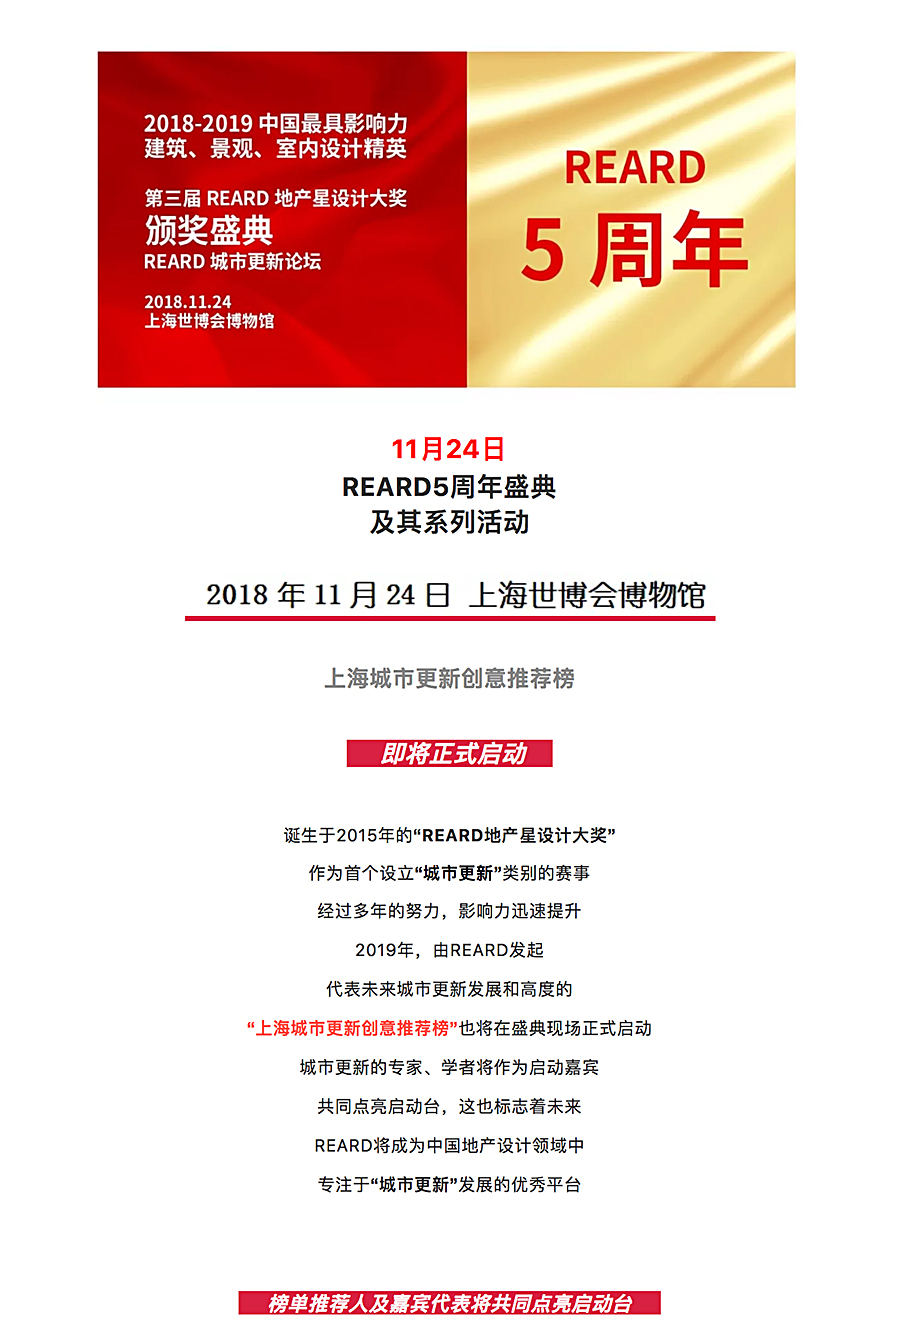 “上海城市更新创意推荐榜”启动仪式即将点亮上海世博会博物馆-_-立足上海，辐射全国_0000_图层-1.jpg